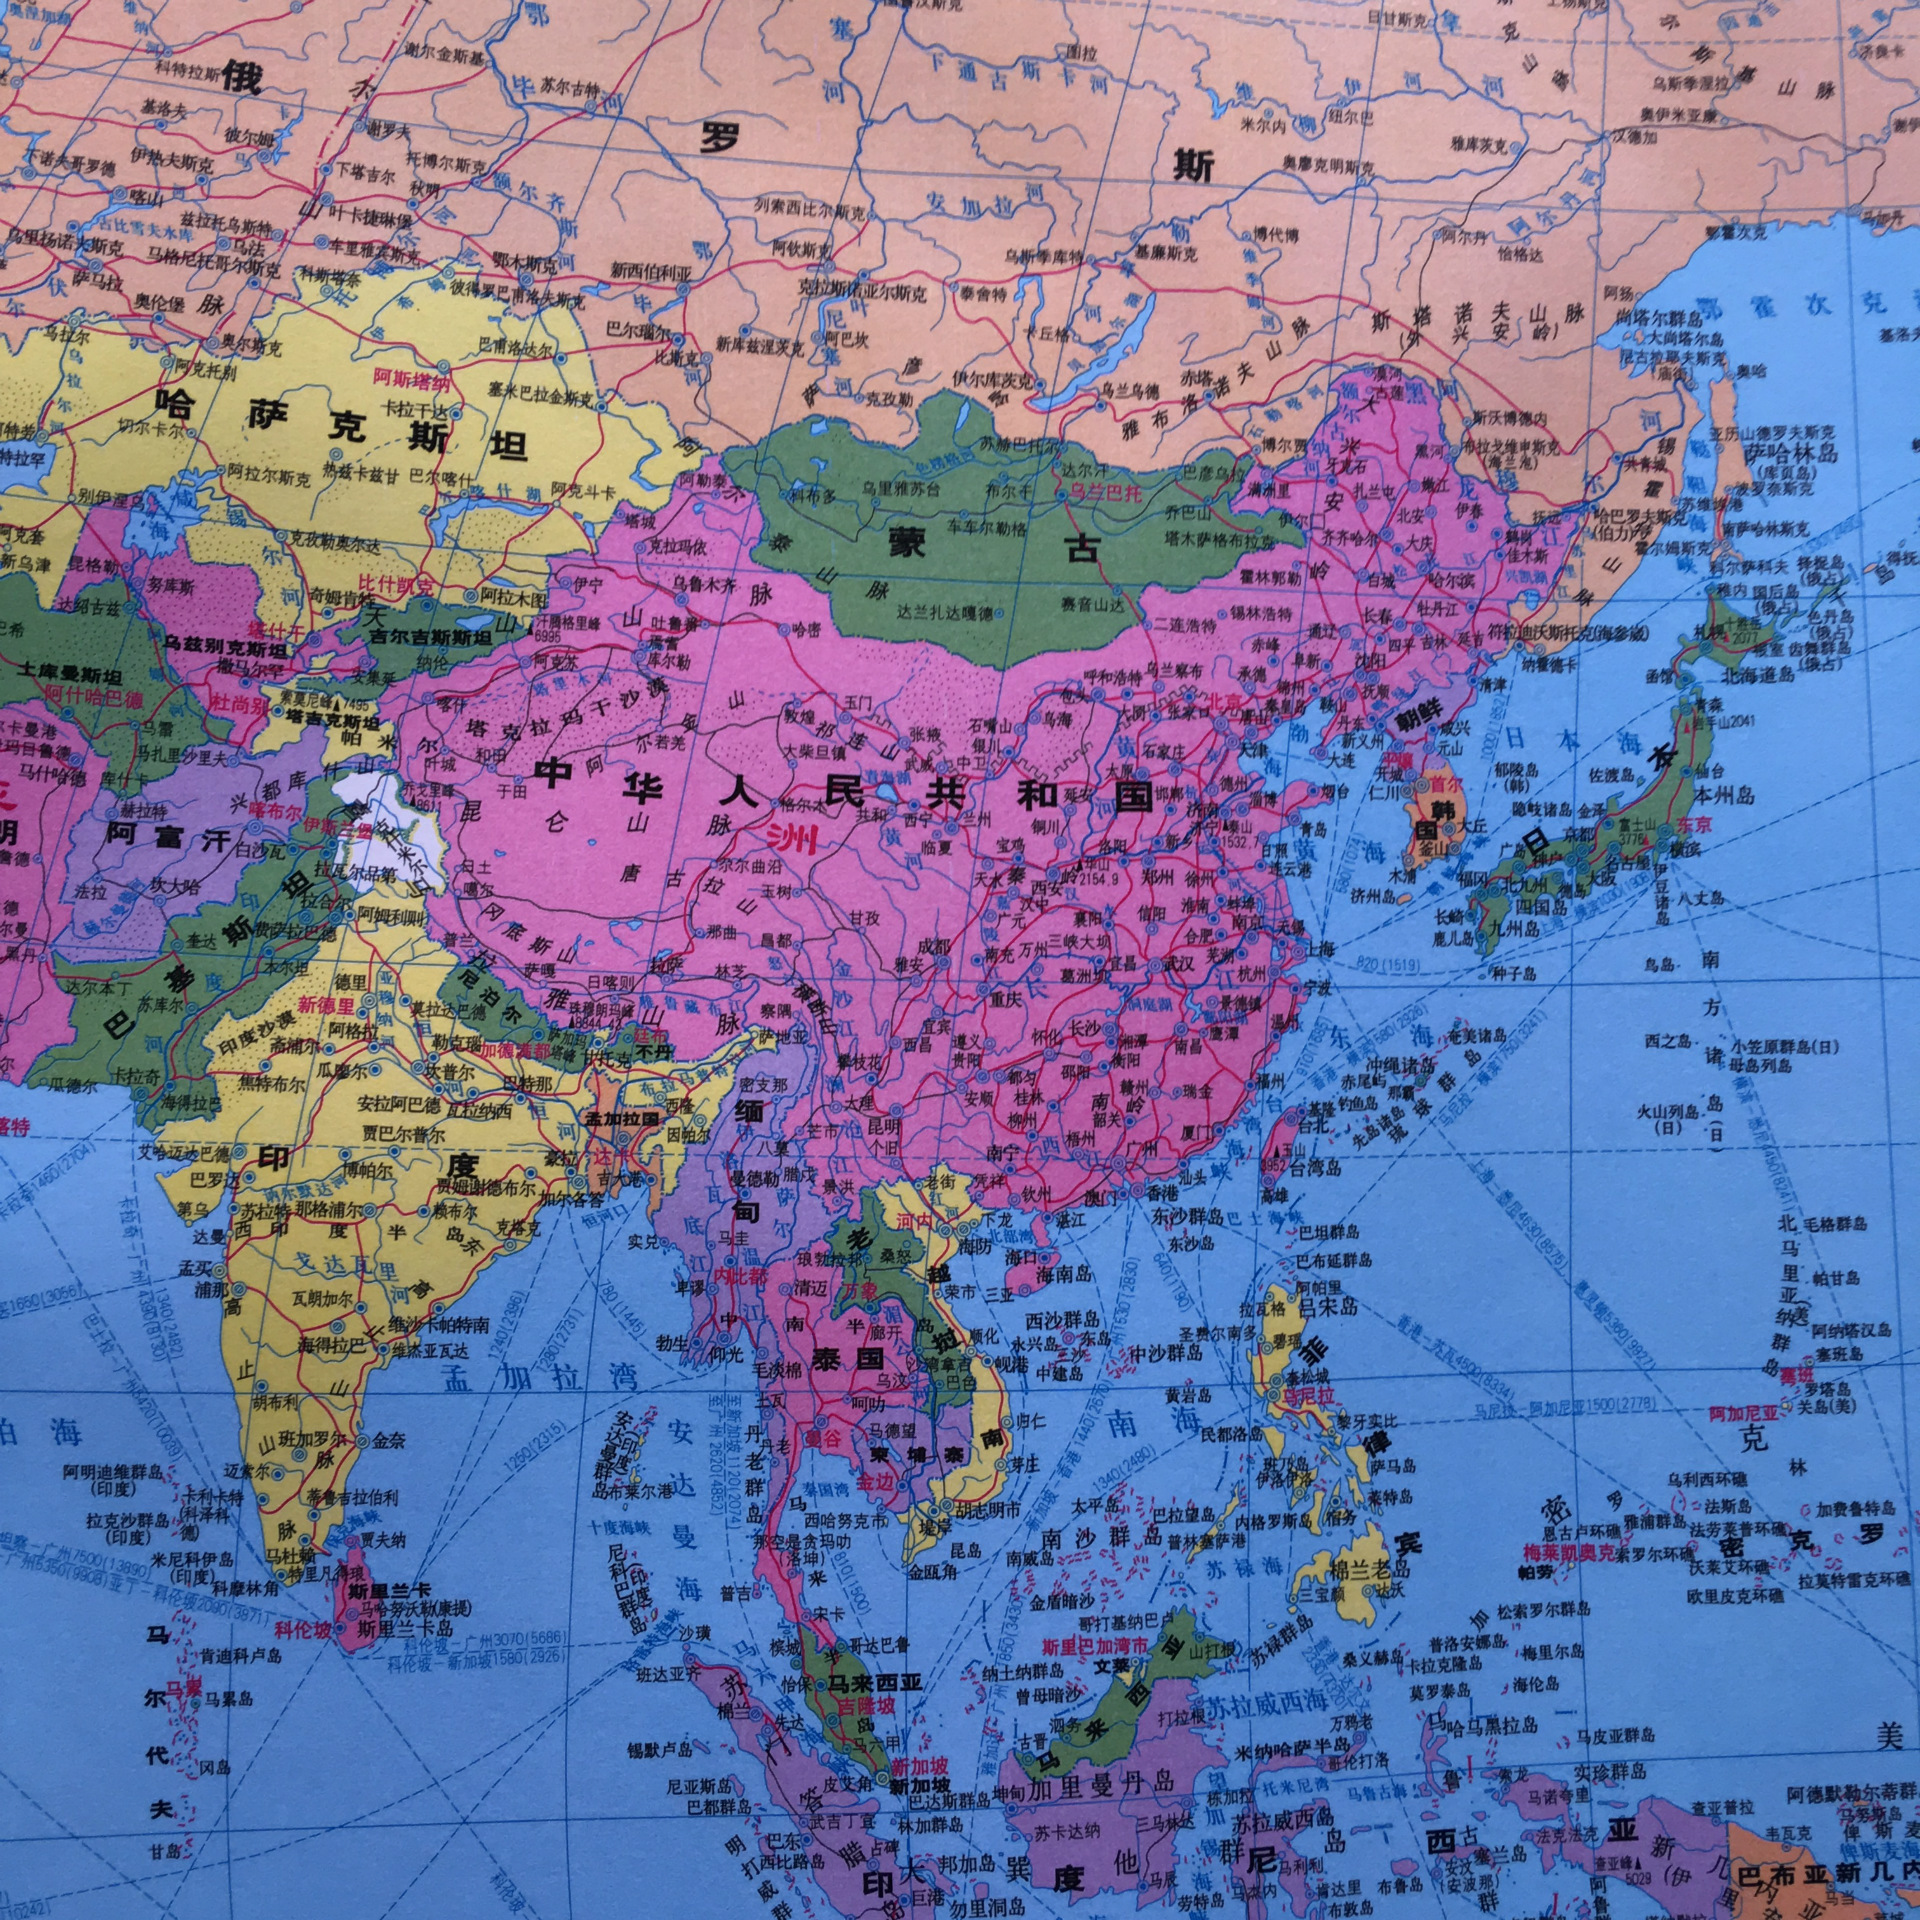 世界地图-世界地图高清图片 - 世界各国 - 天天微站